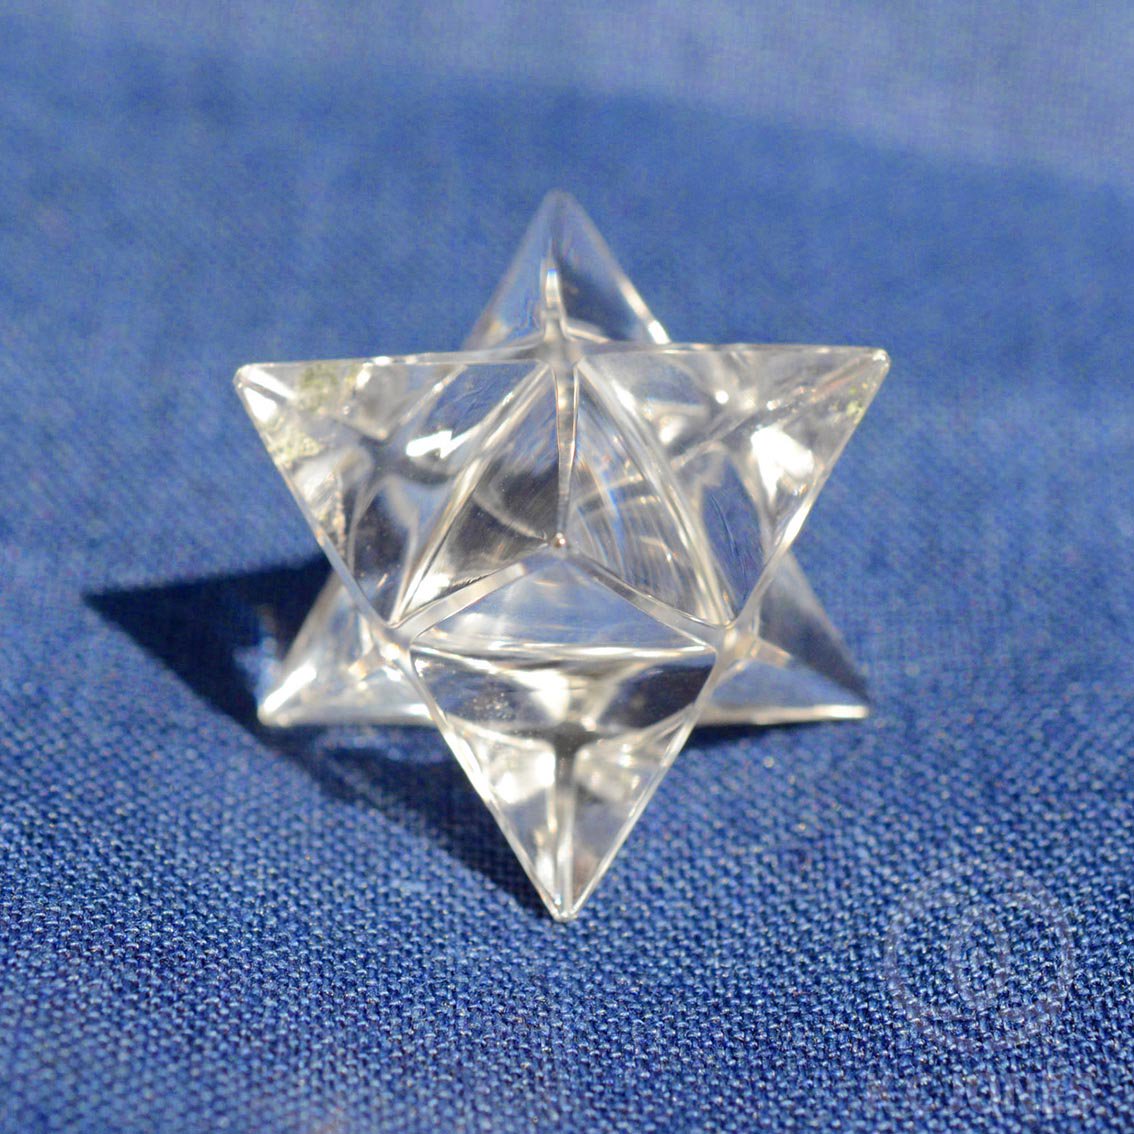 クリアクォーツ・星形二重正四面体（マカバ）19g フラワーオブライフ、メタトロンキューブ、神聖幾何学、ヘンプアイテムの K C  ジョーンズ・クリスタルショップです。